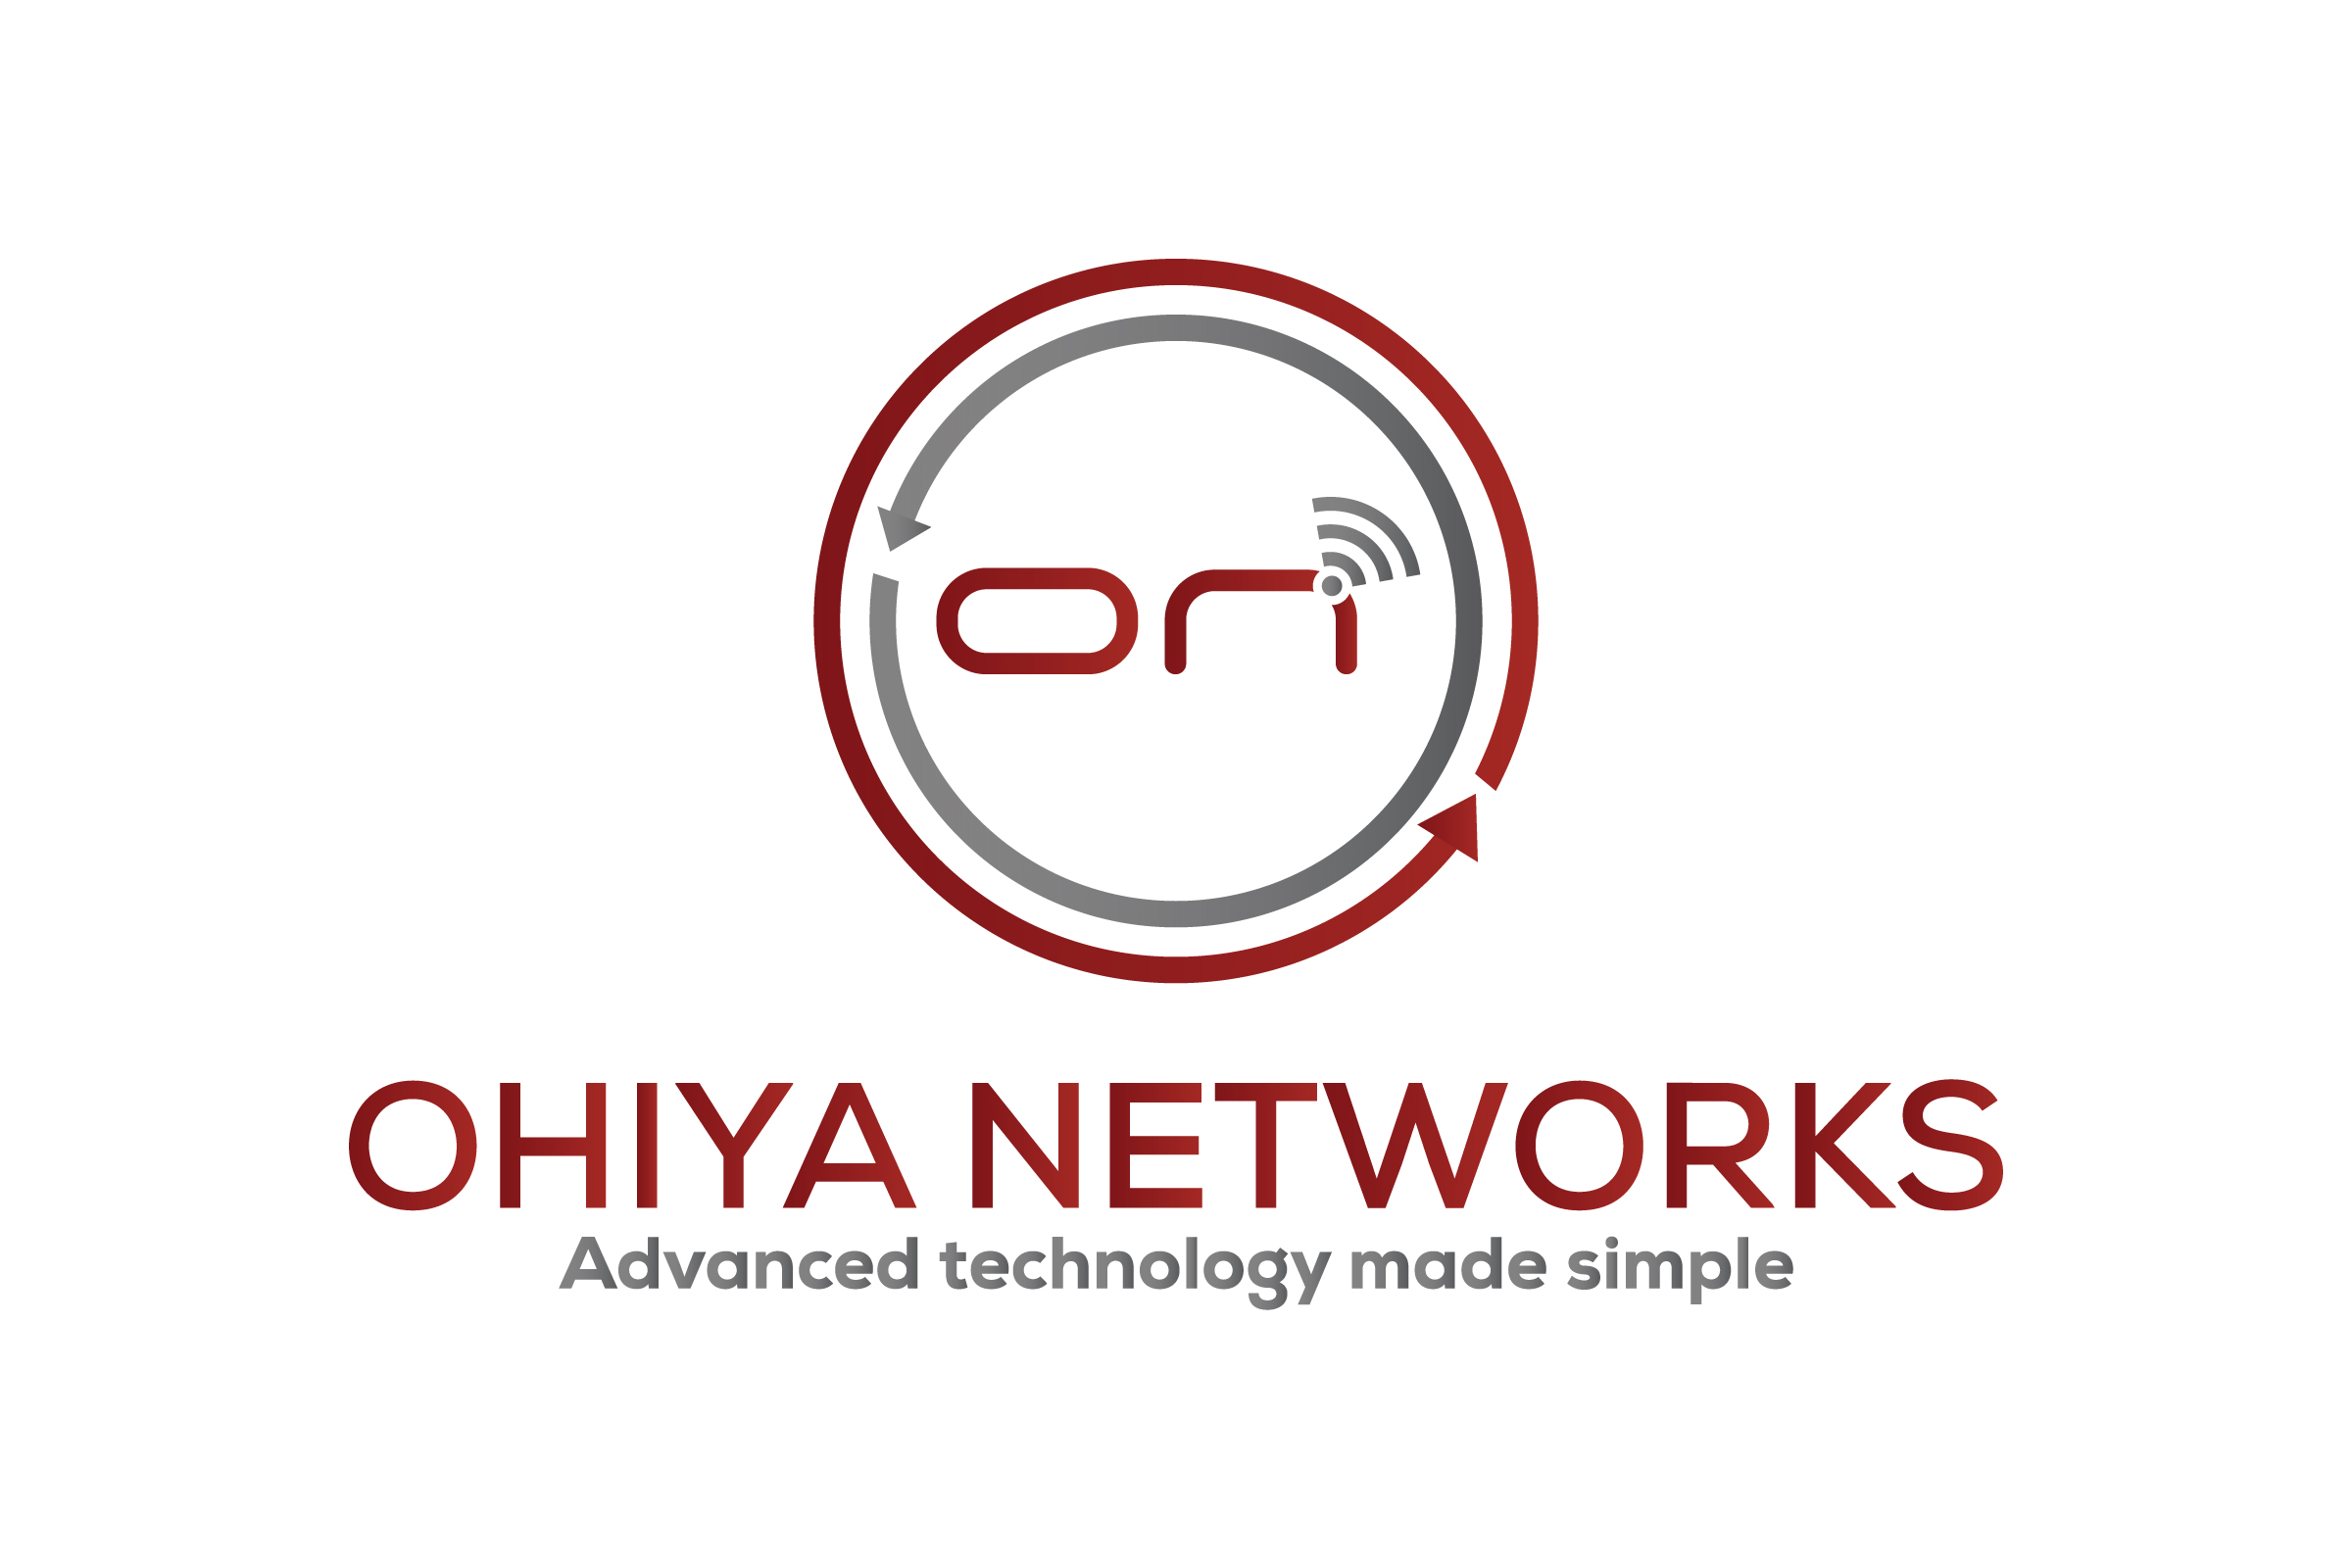 Ohiya Networks